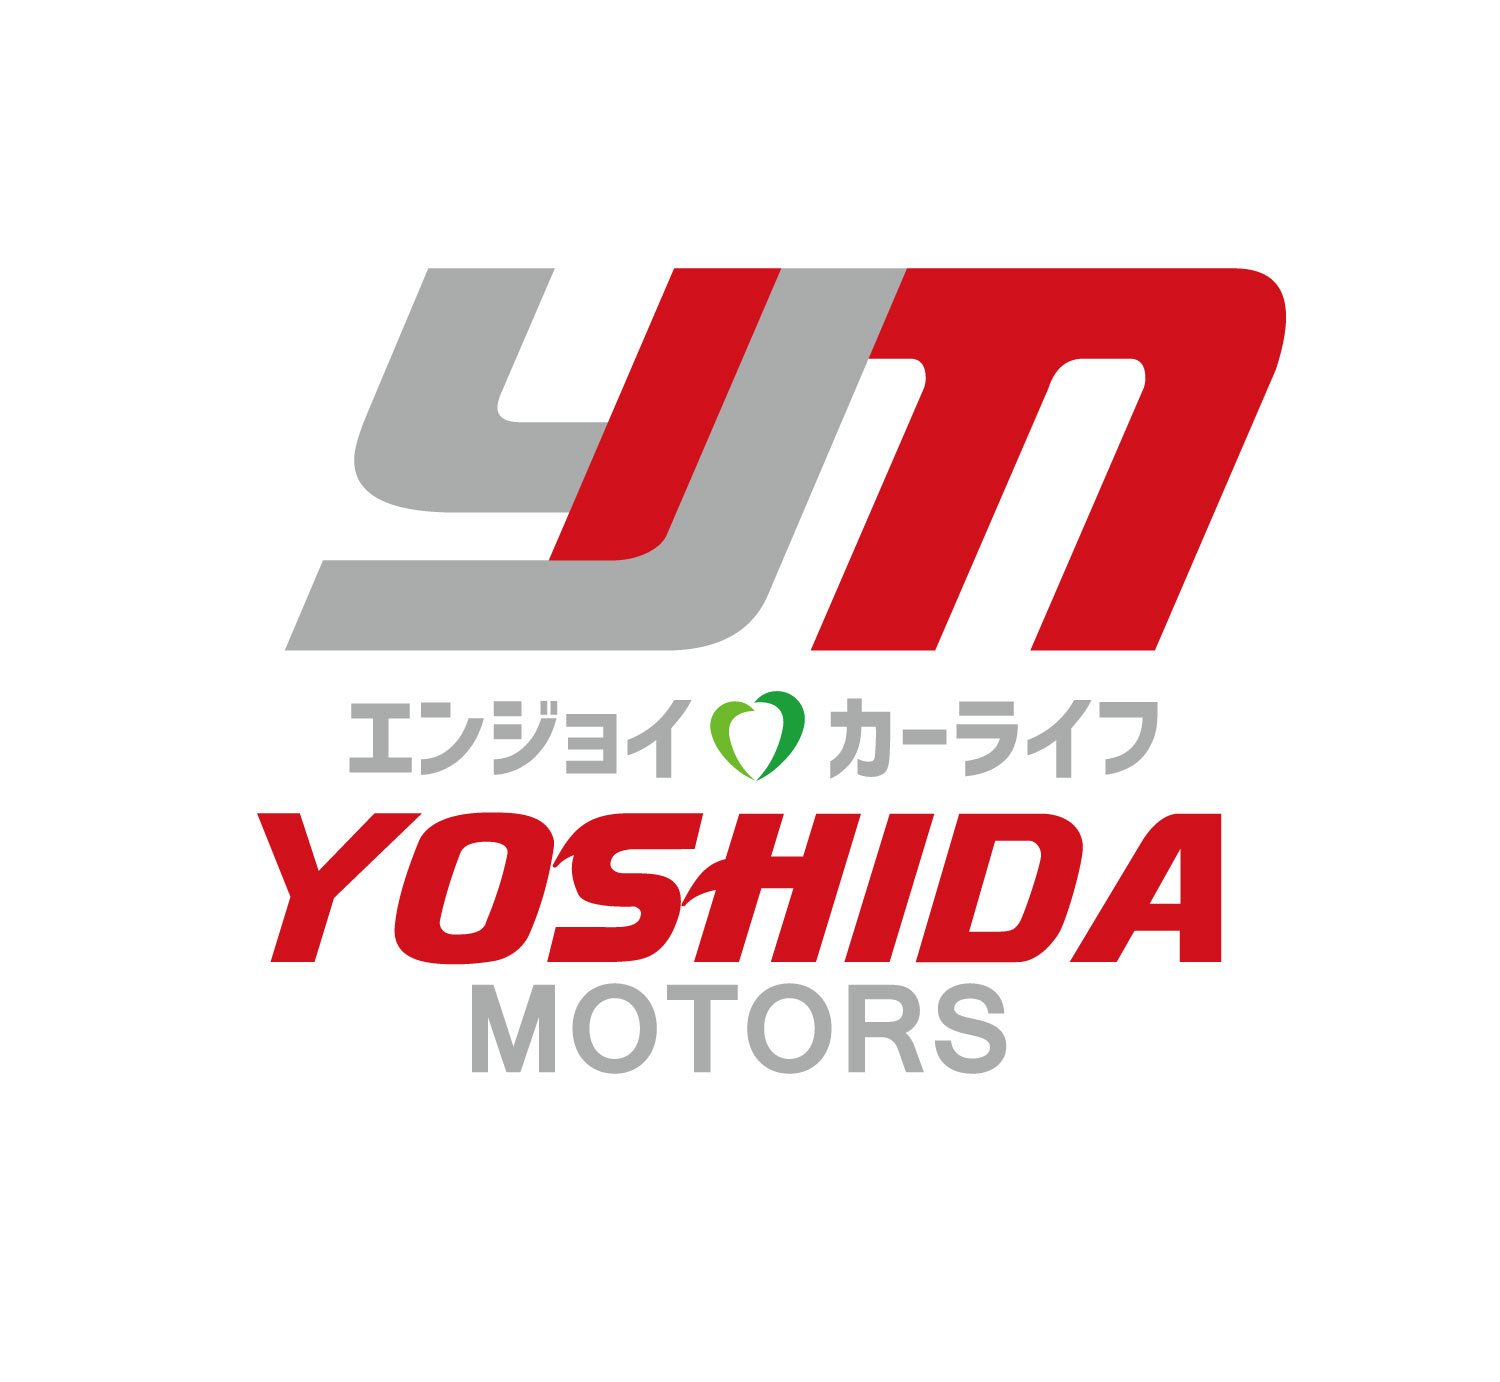 有限会社 吉田自動車 愛媛県宇和島市吉田町の新車 中古車 輸入車販売から修理まで Yoshida Motors Twitter